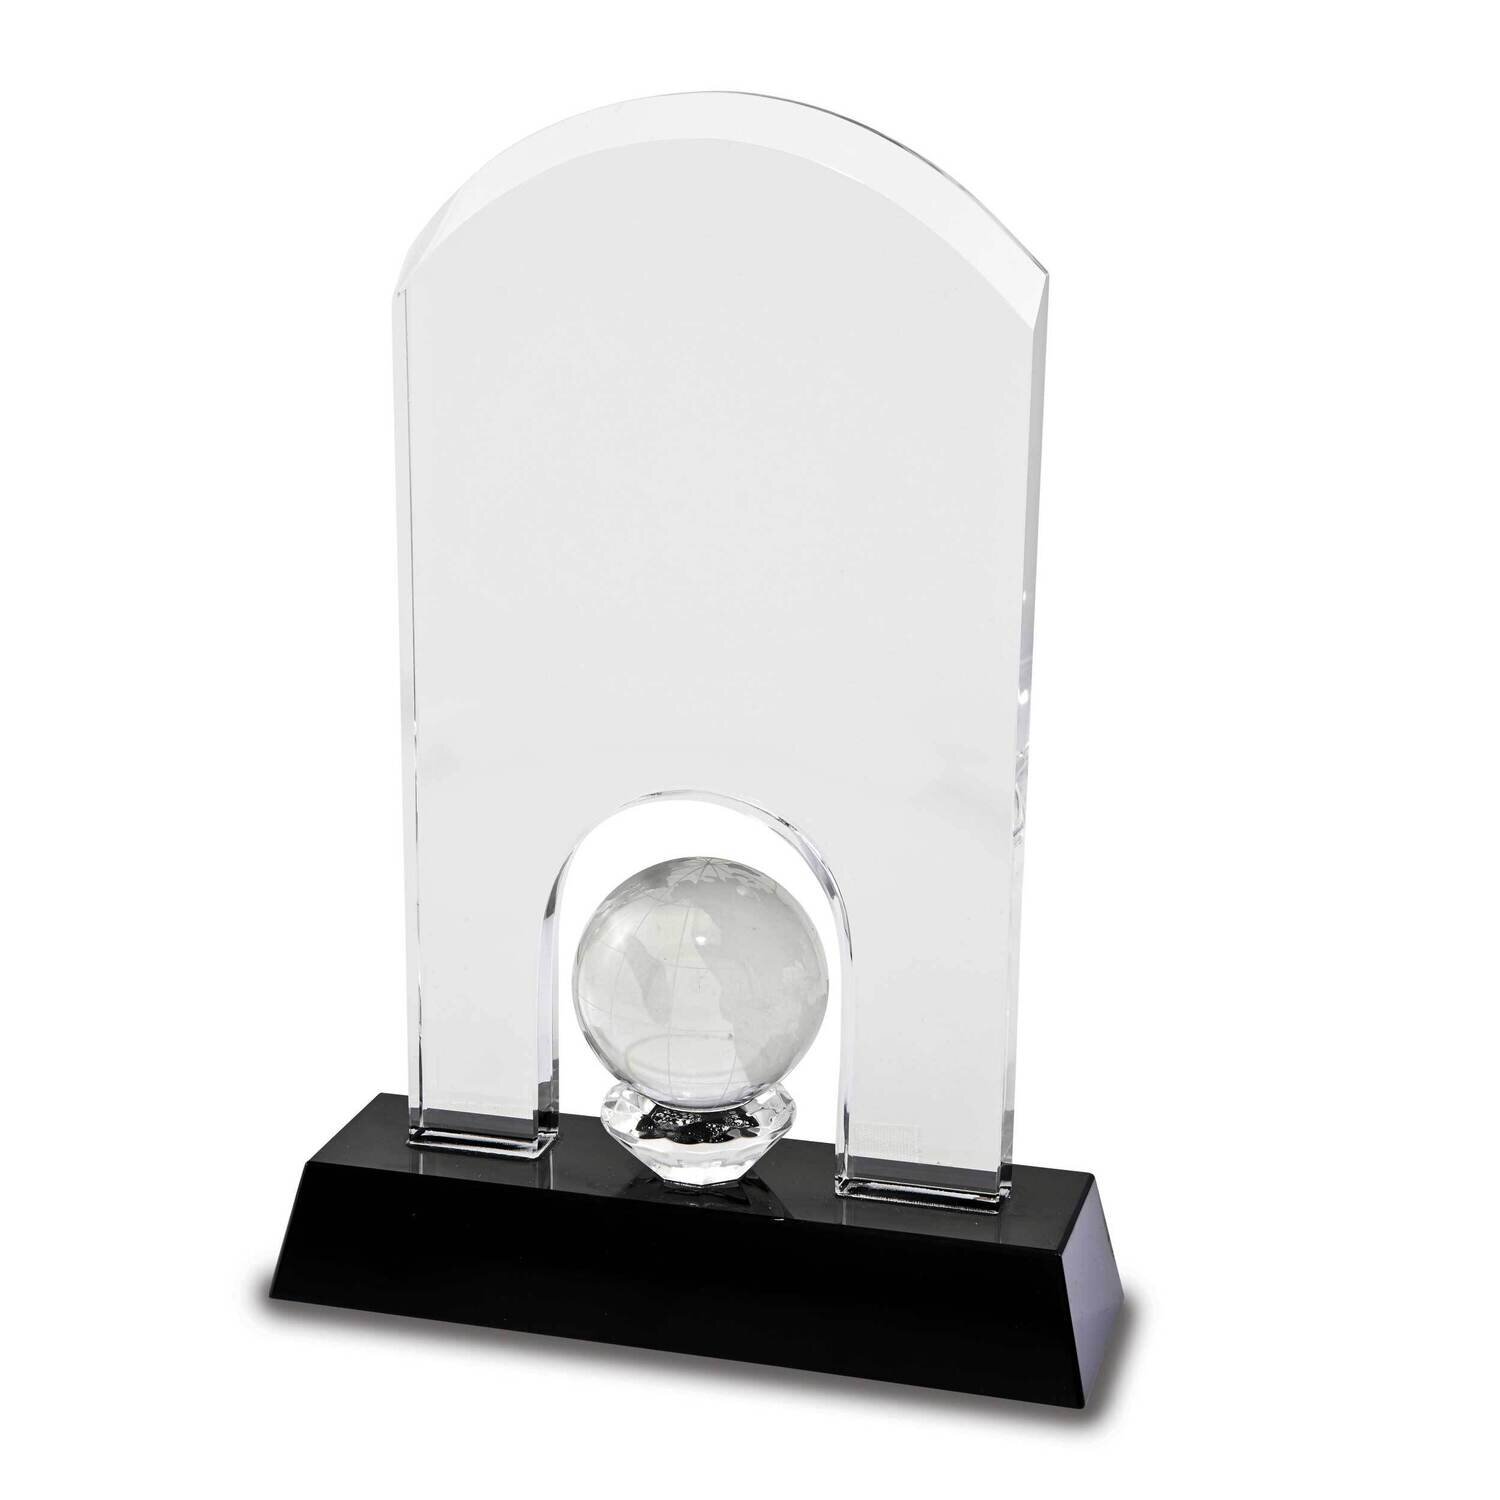 Optic Glass Domed Globe Award GM15241